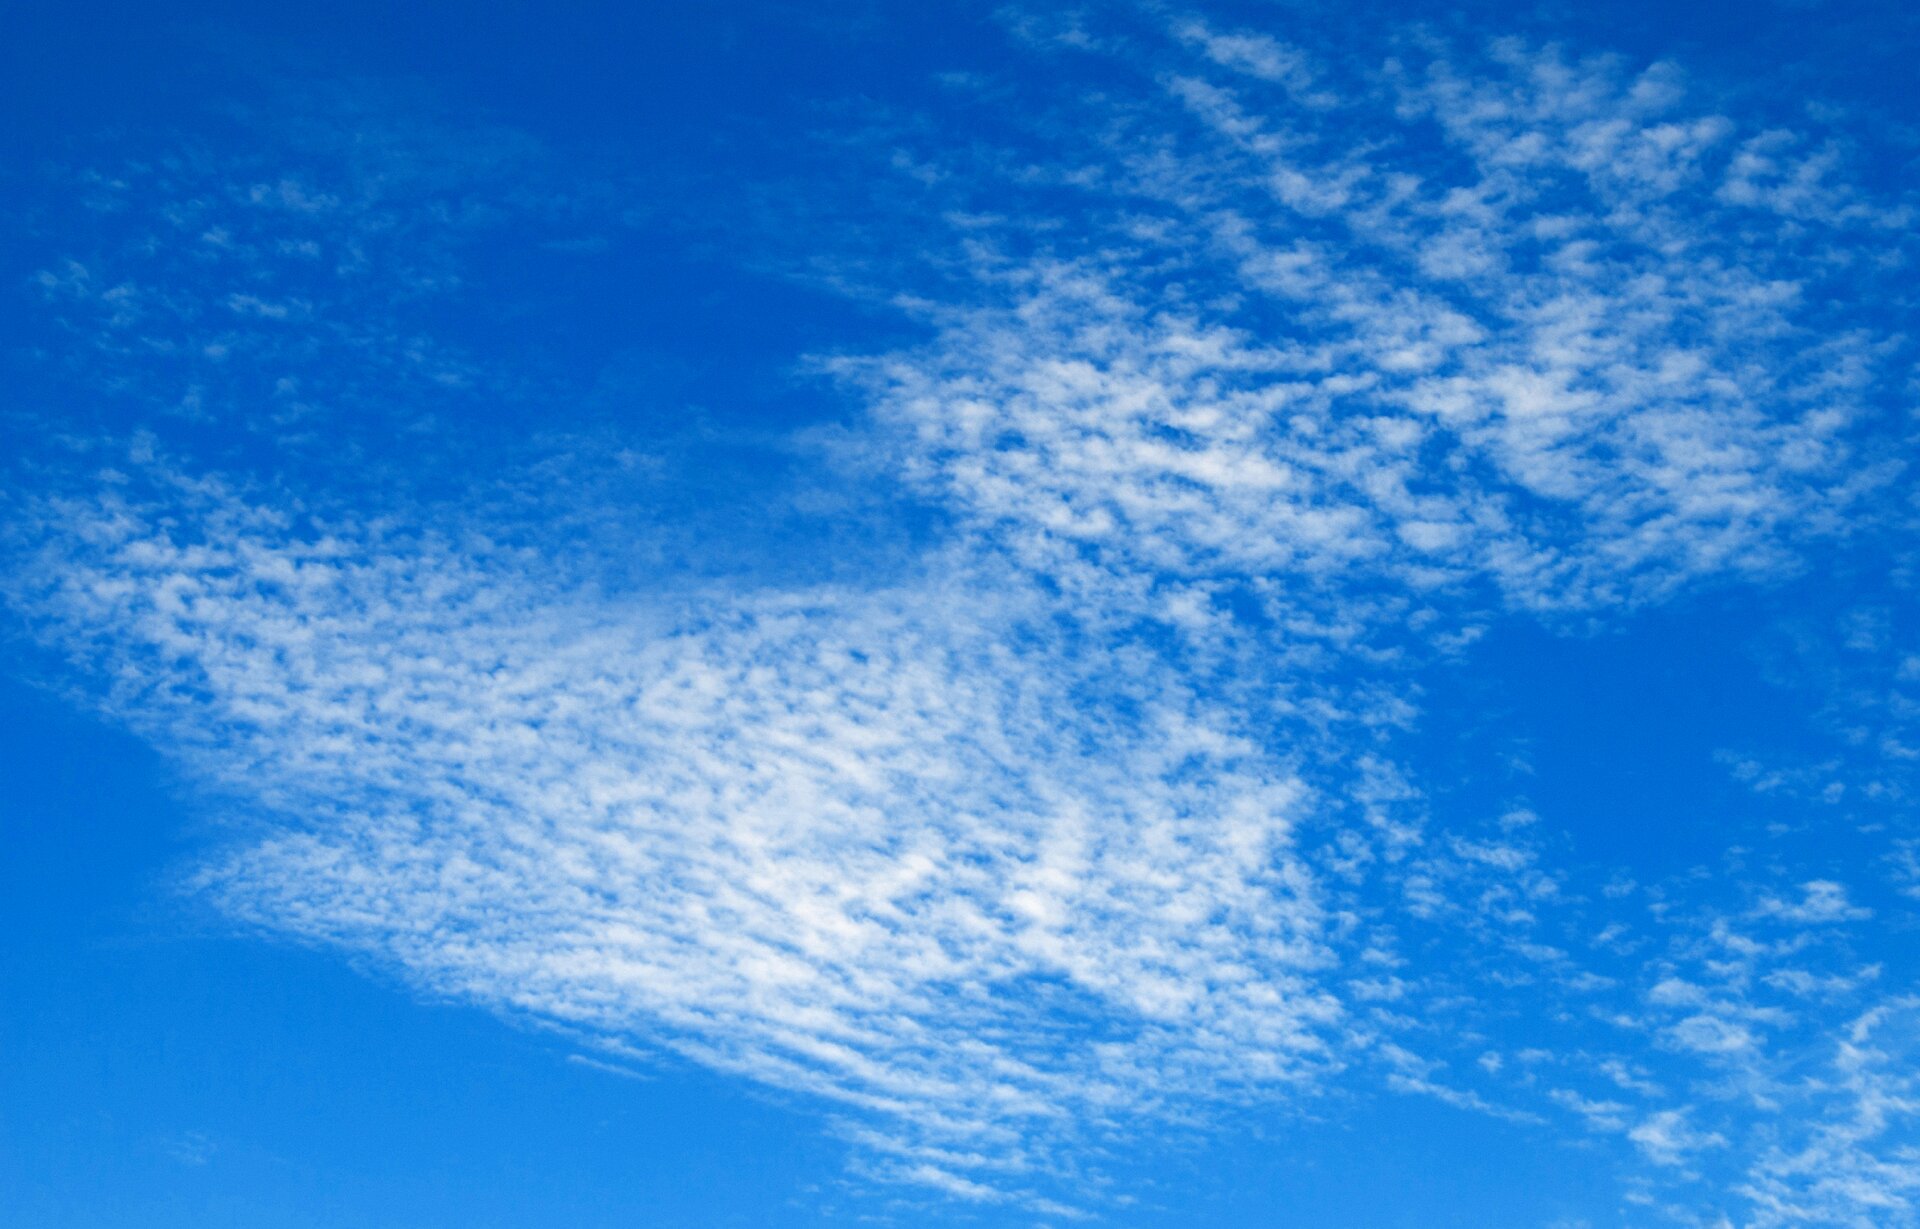 Zdjęcie przedstawia chmury typu cirrocumulus. Wyglądem przypominają bardzo delikatną piankę na błękitnej wodzie.